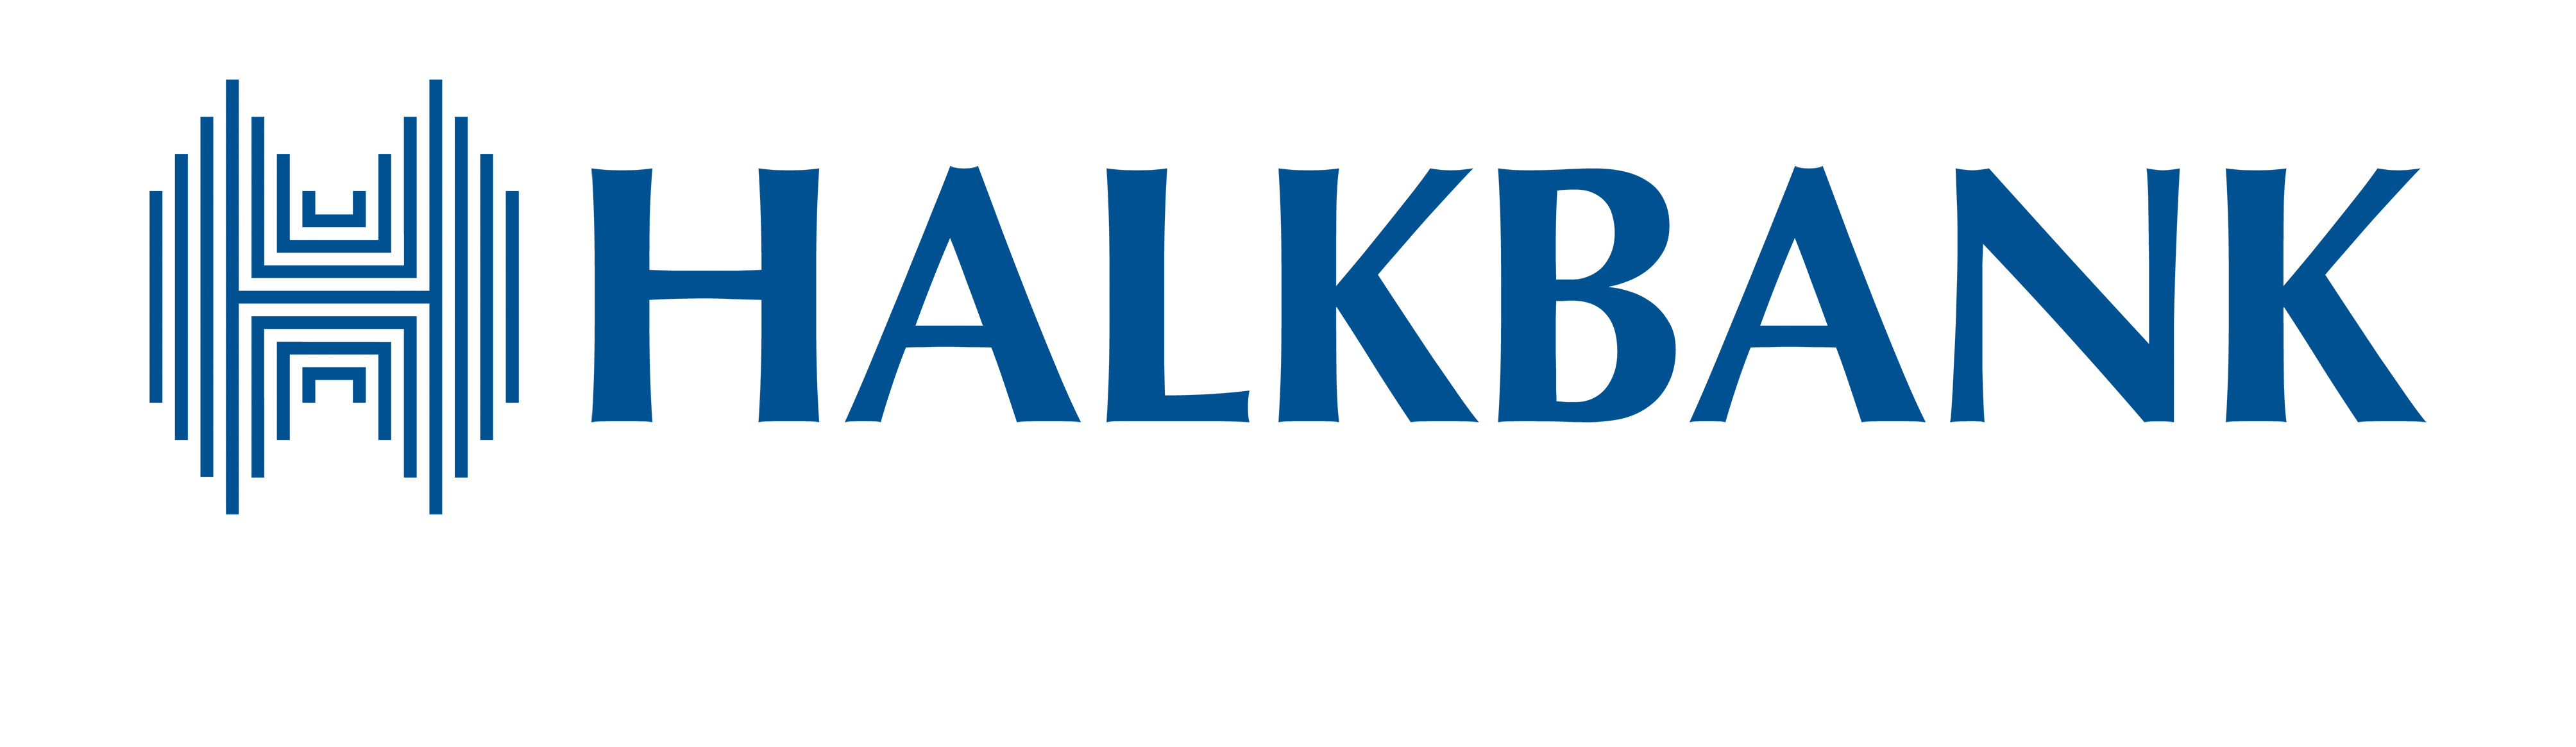 Halkbank’tan Türkiye ekonomisine 603,1 milyar TL destek 